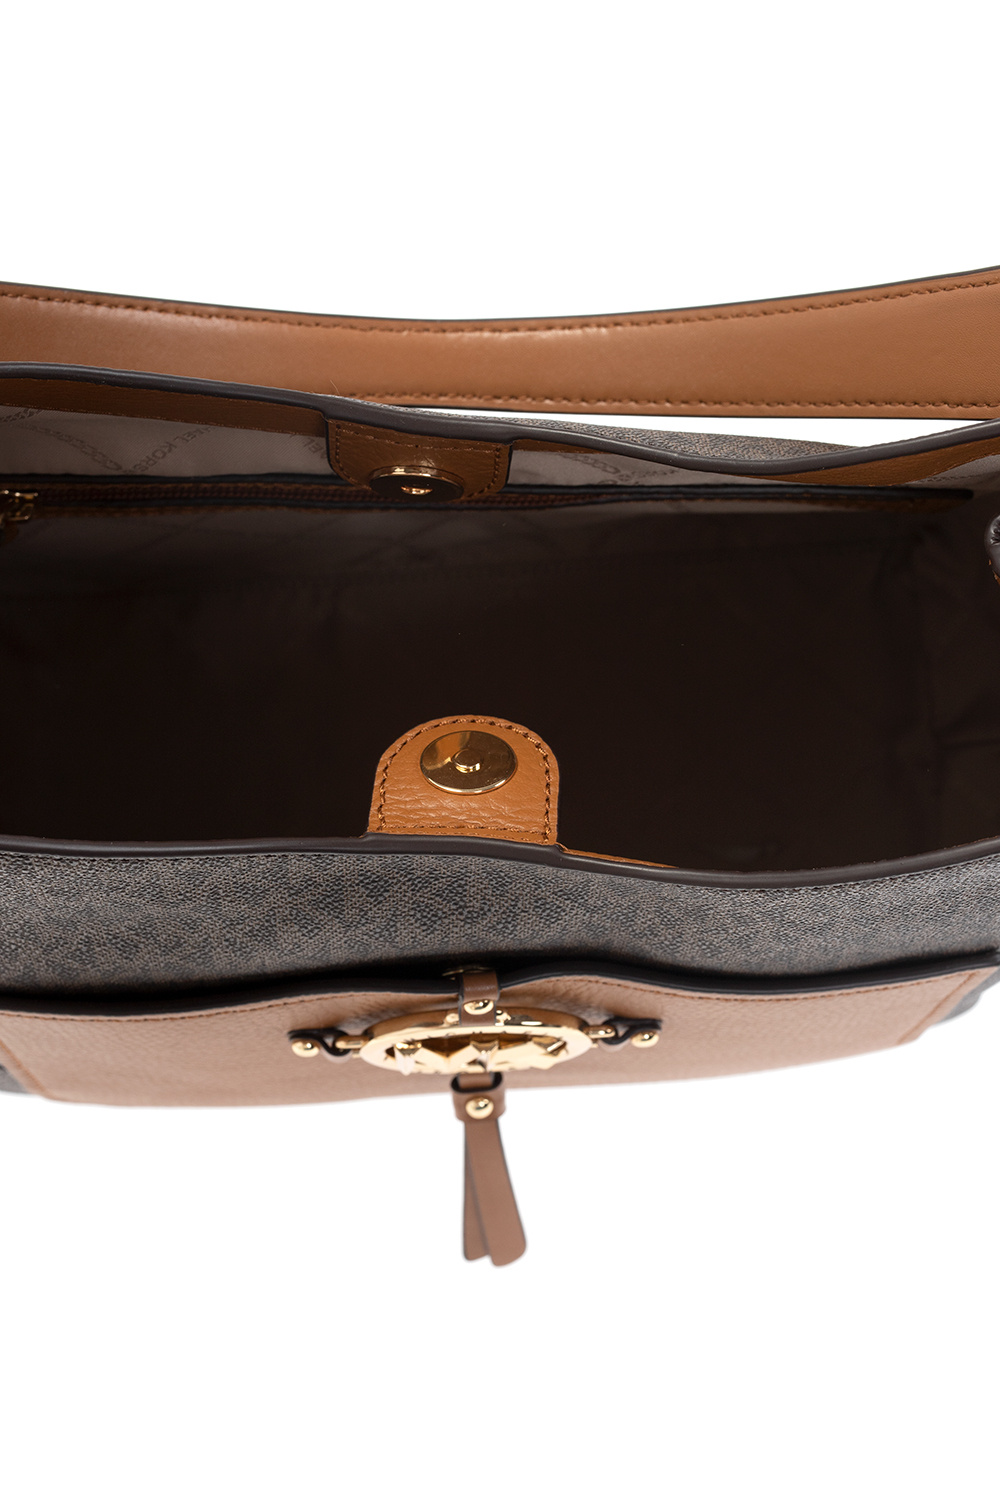 Michael Michael Kors ‘Amy Large’ handbag